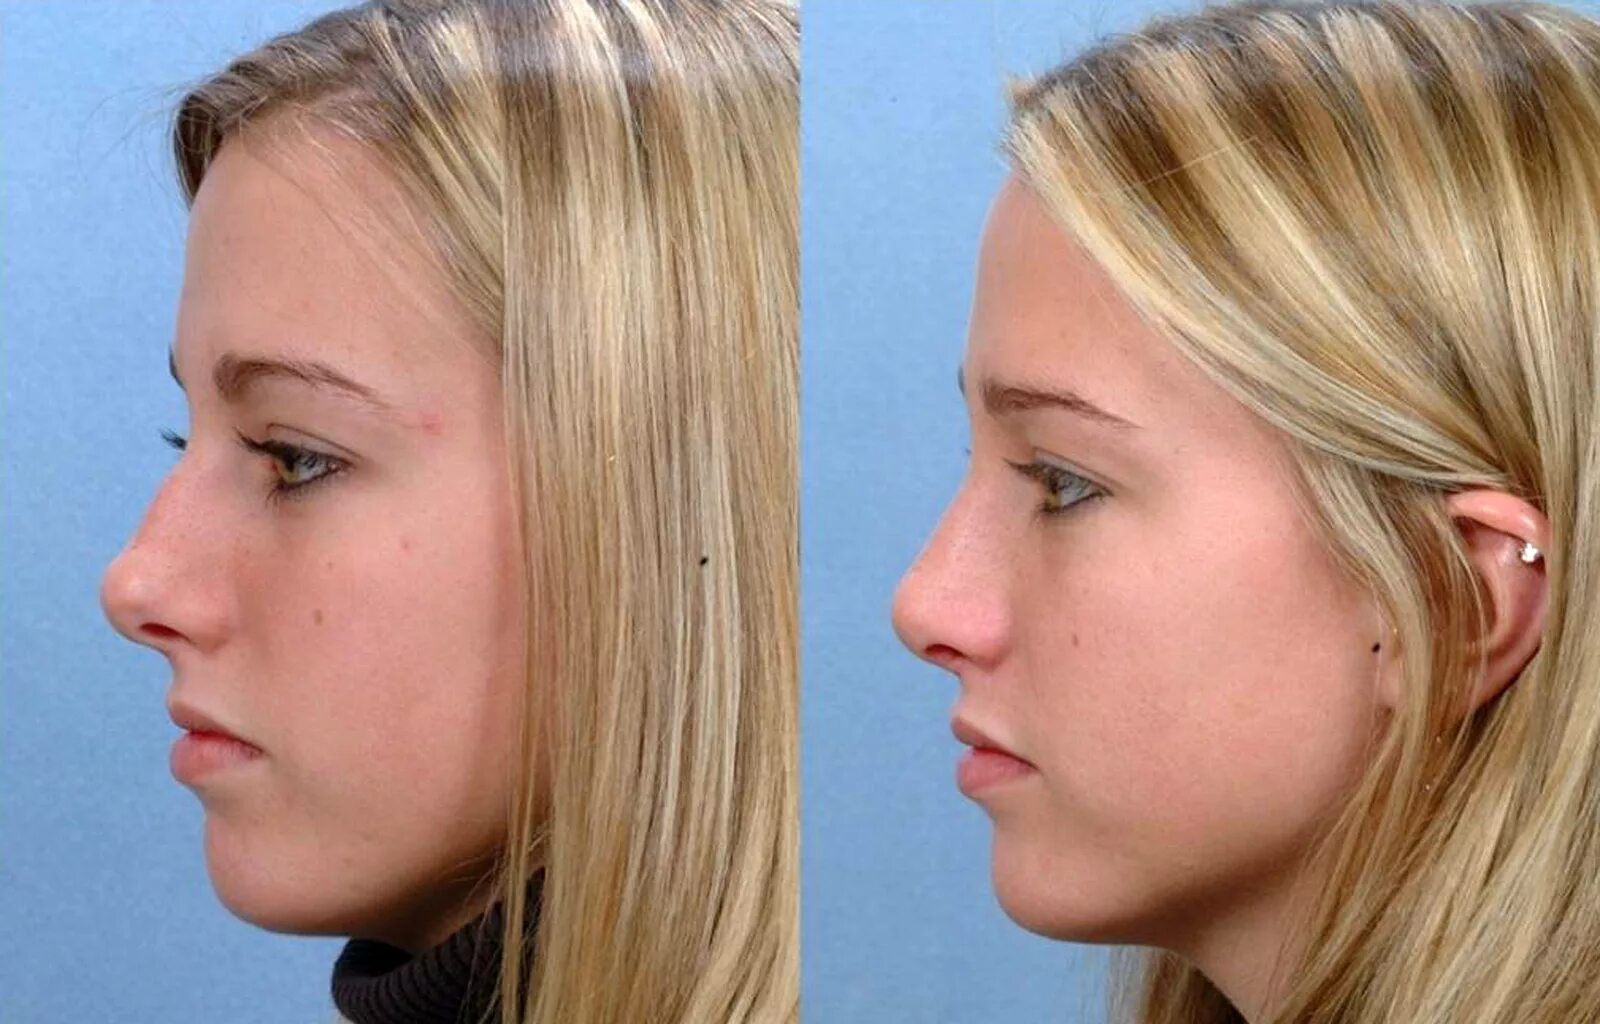 Фото ринопластики до и после нос. Ринопластика Эленшлегер. Пластика носа. Ринопластика носа. Пластическая операция на нос до и после.